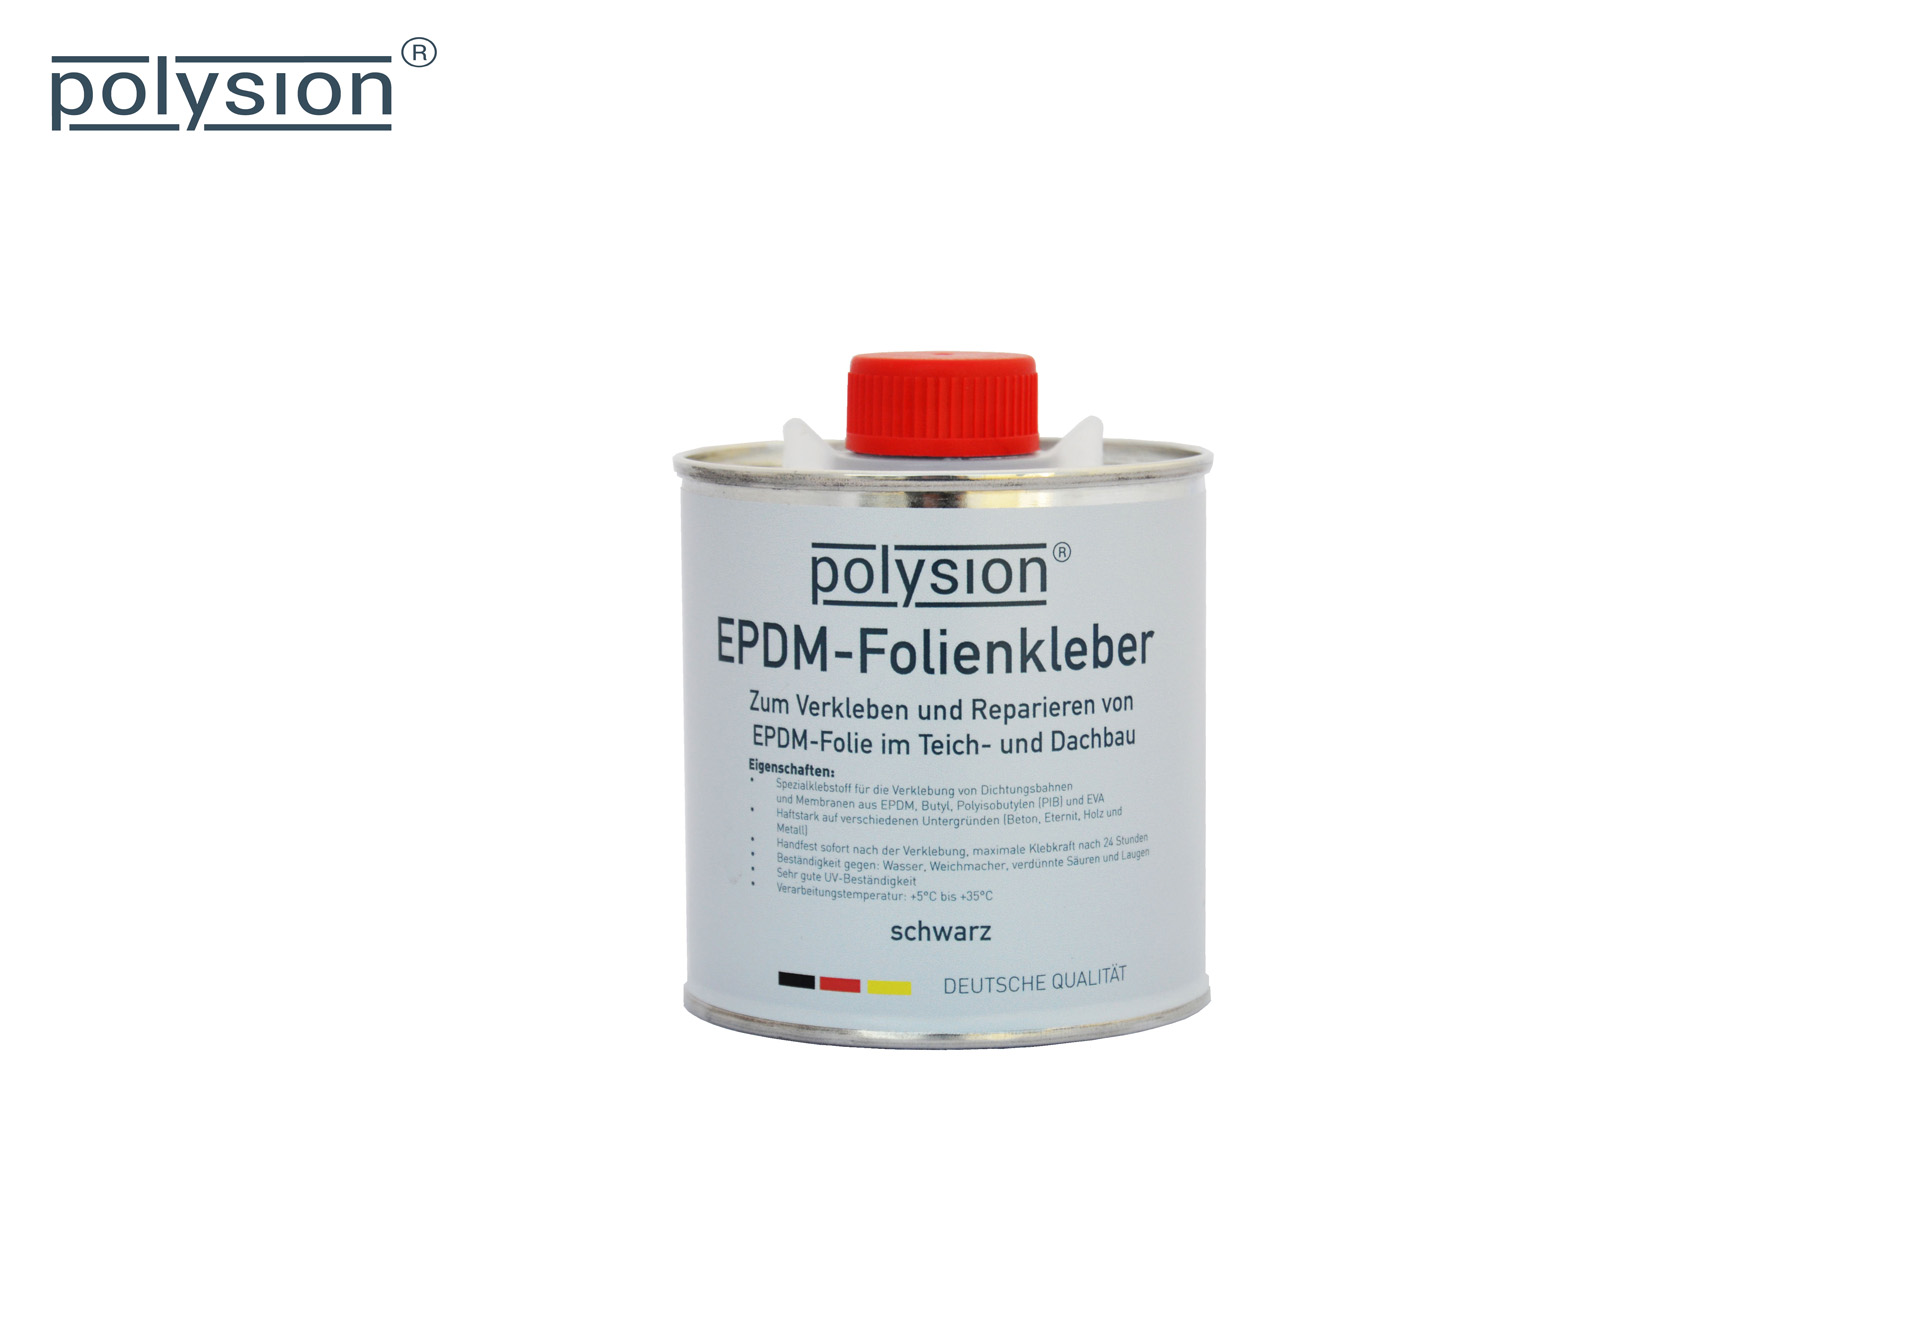 Polysion®EPDM-Folienkleber, 250ml - Grundpreis: 5,96€/100ml